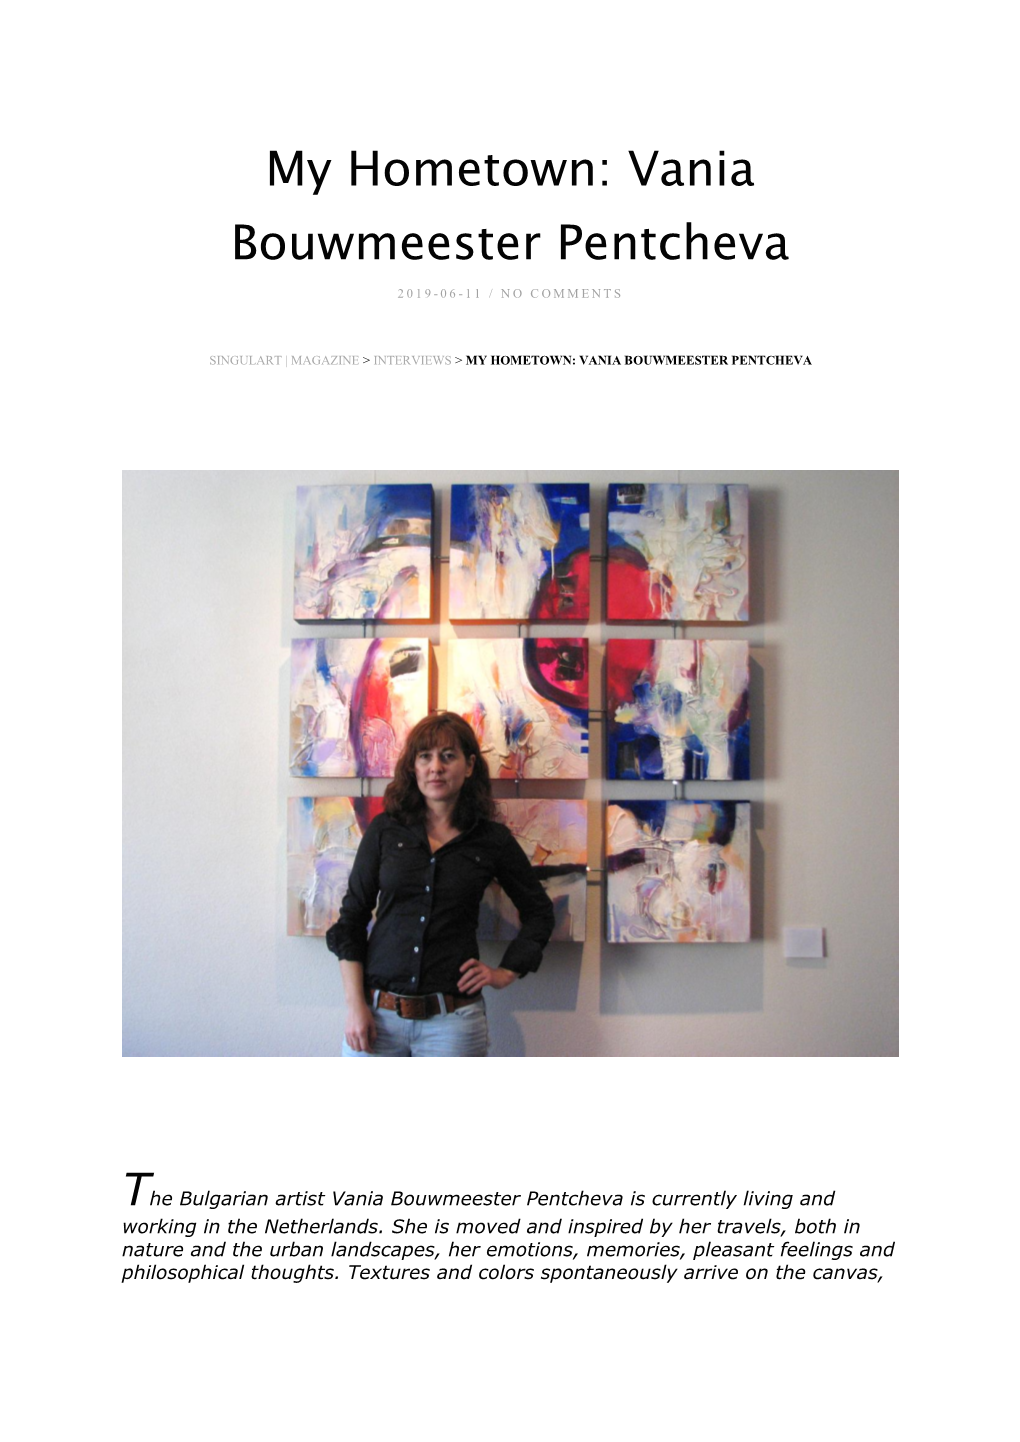 My Hometown: Vania Bouwmeester Pentcheva